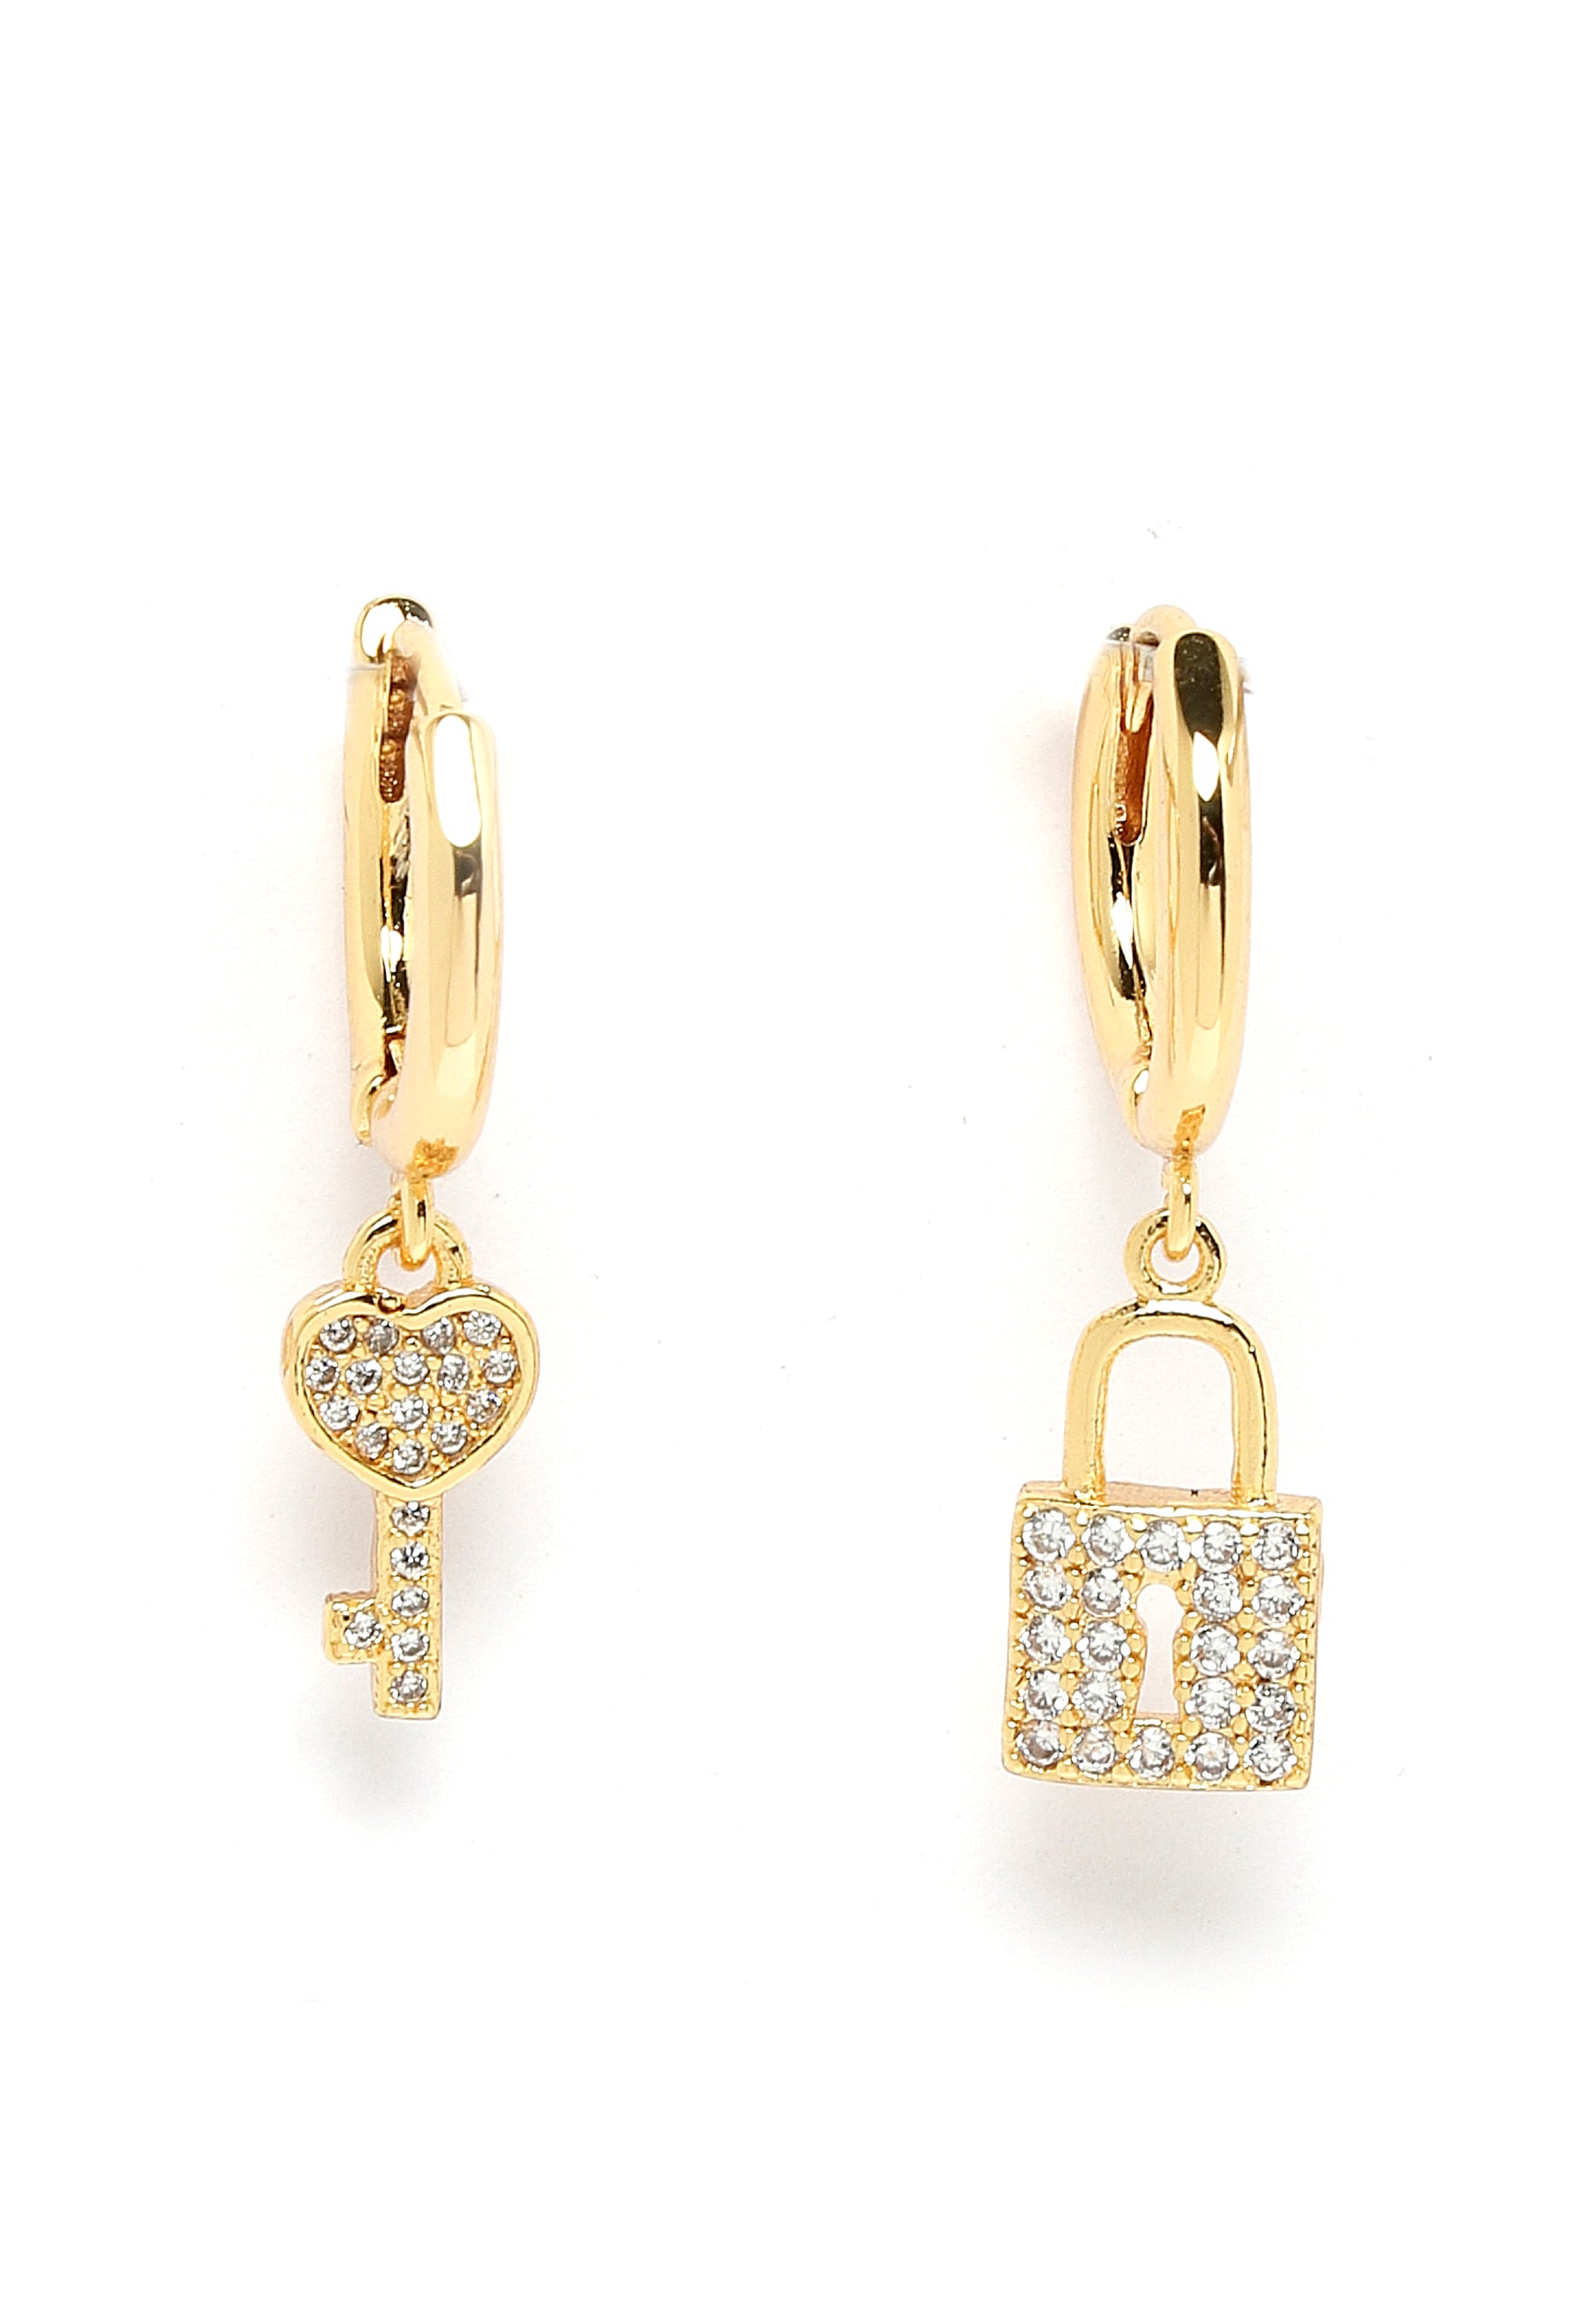 Vergoldete Herz-Schlüssel-Ohrringe mit Kristallen